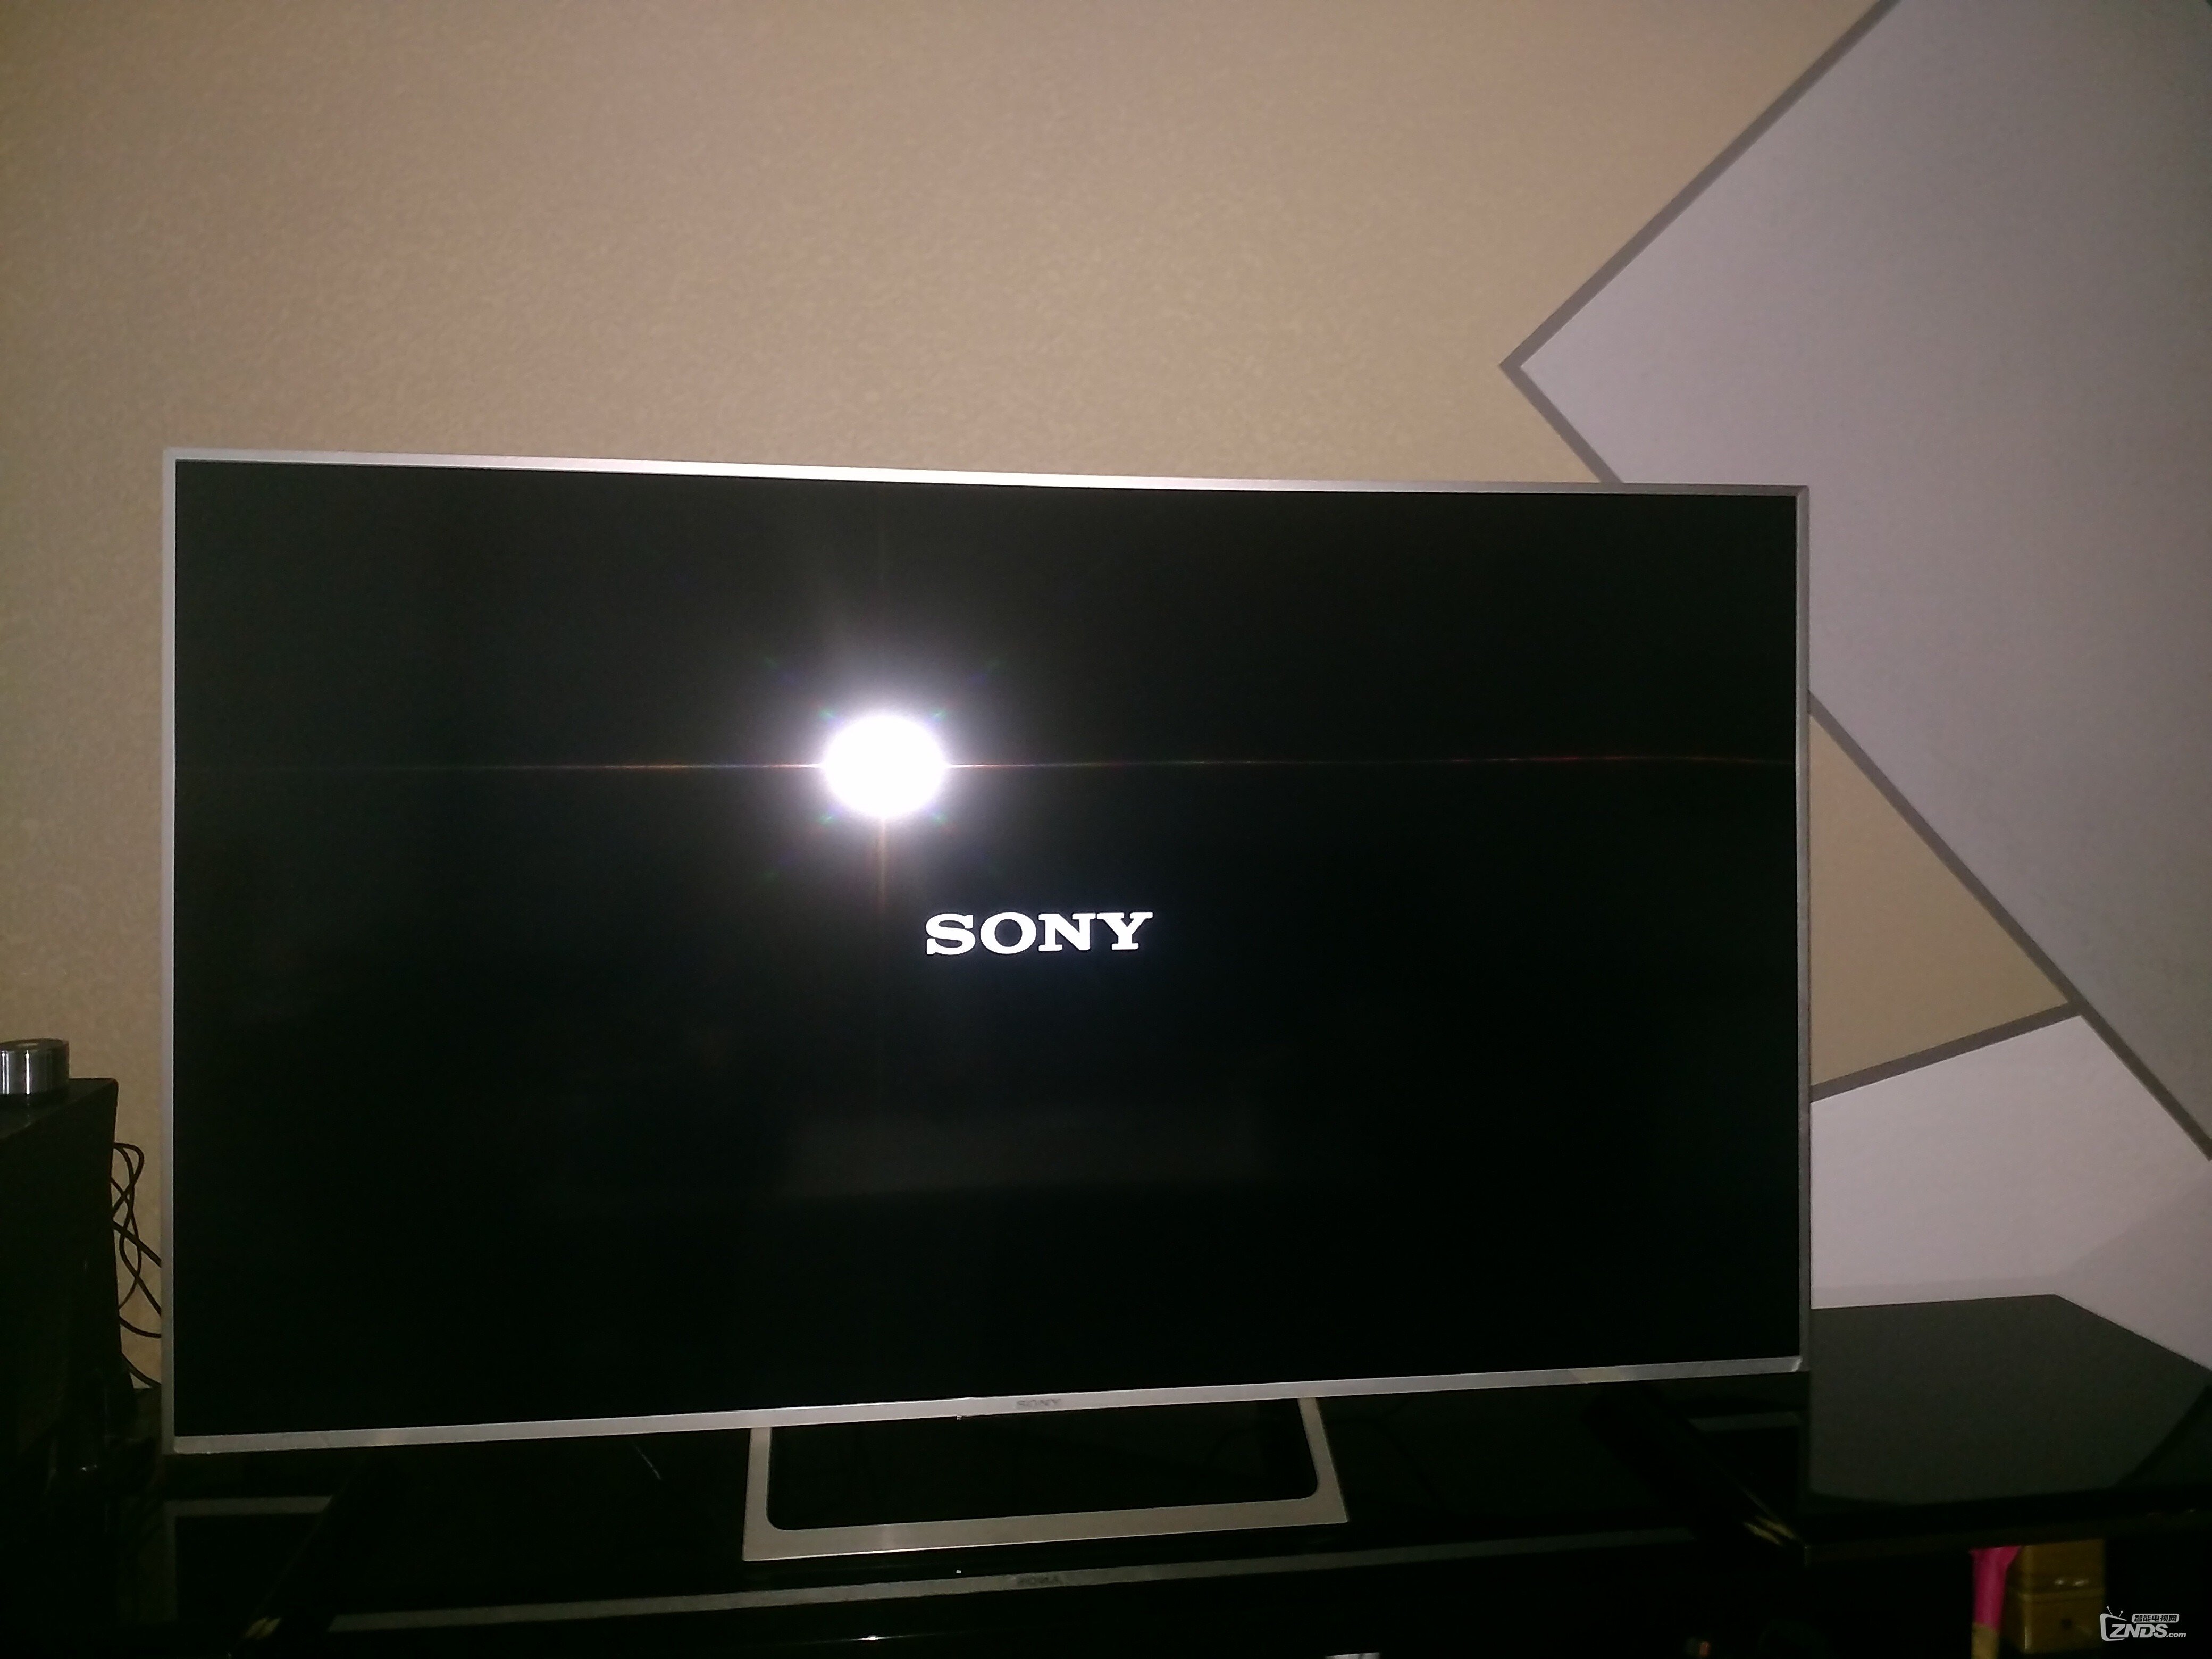 求助,Sony8500E开不了机,屏幕一直显示Sony字